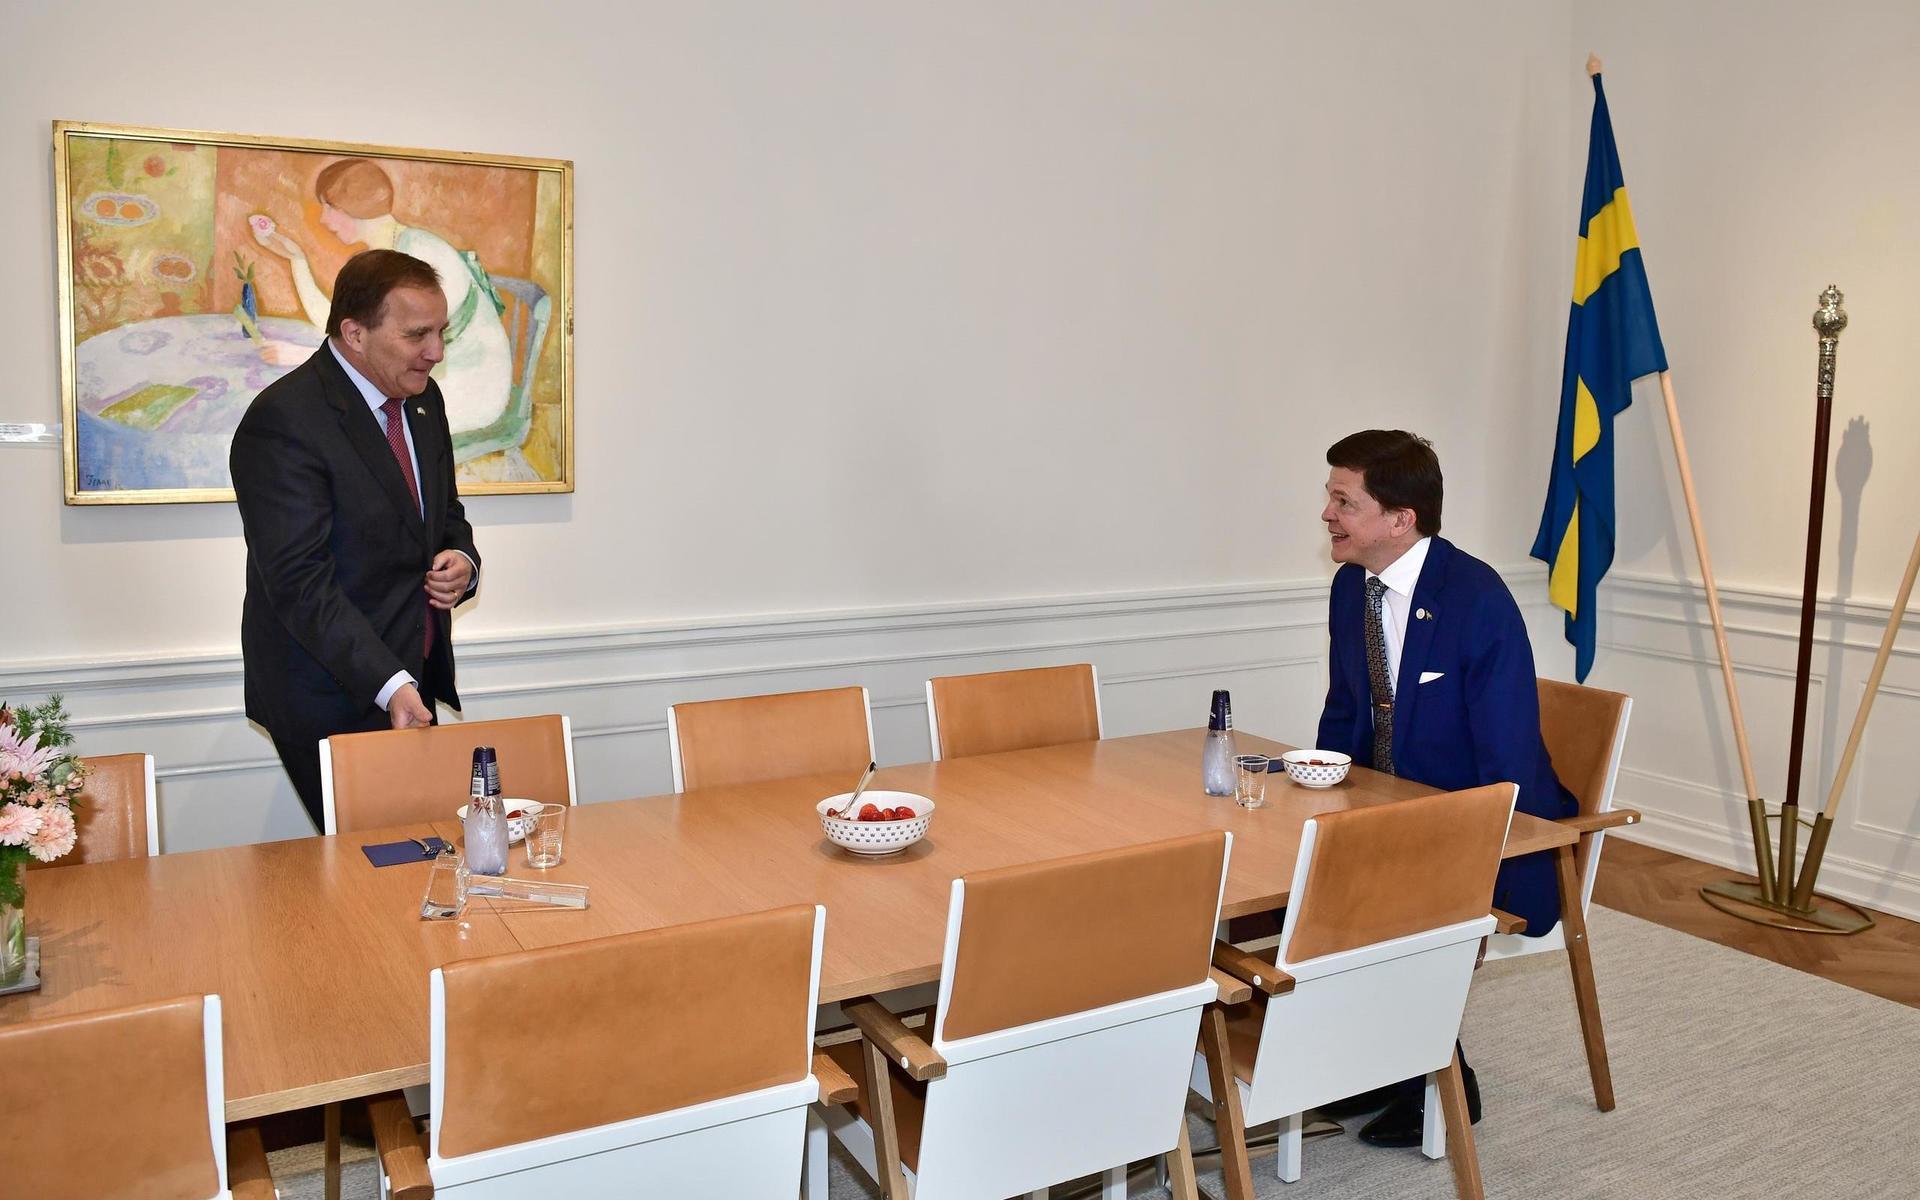 Statsminister Stefan Löfven tas emot av Riksdagens talman Andreas Norlén.